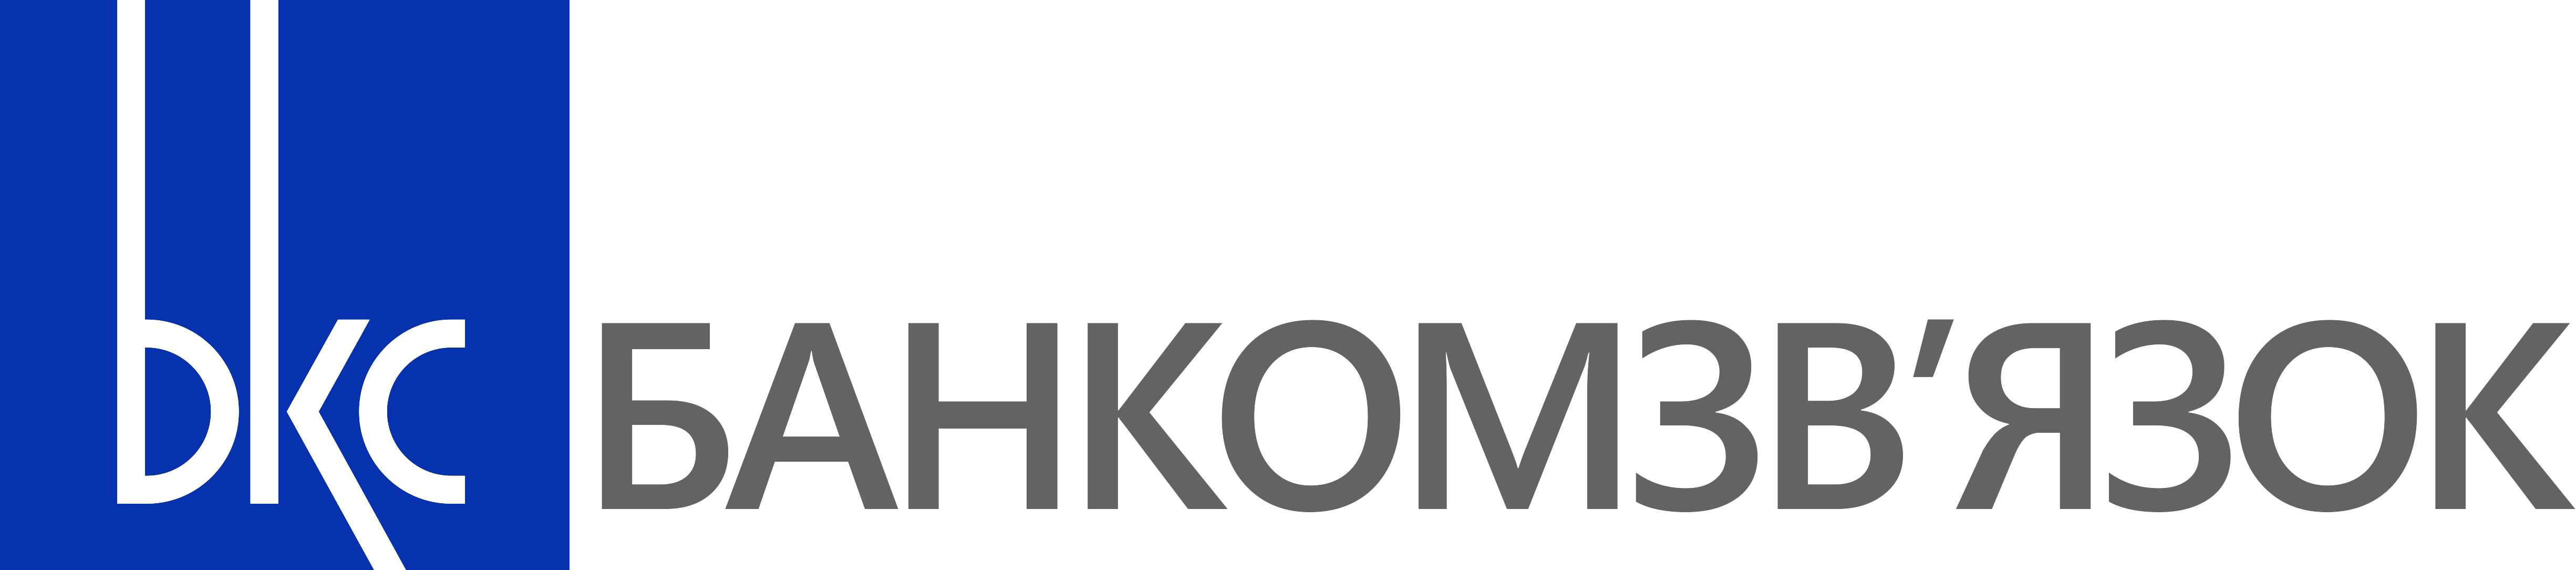 BKC logo